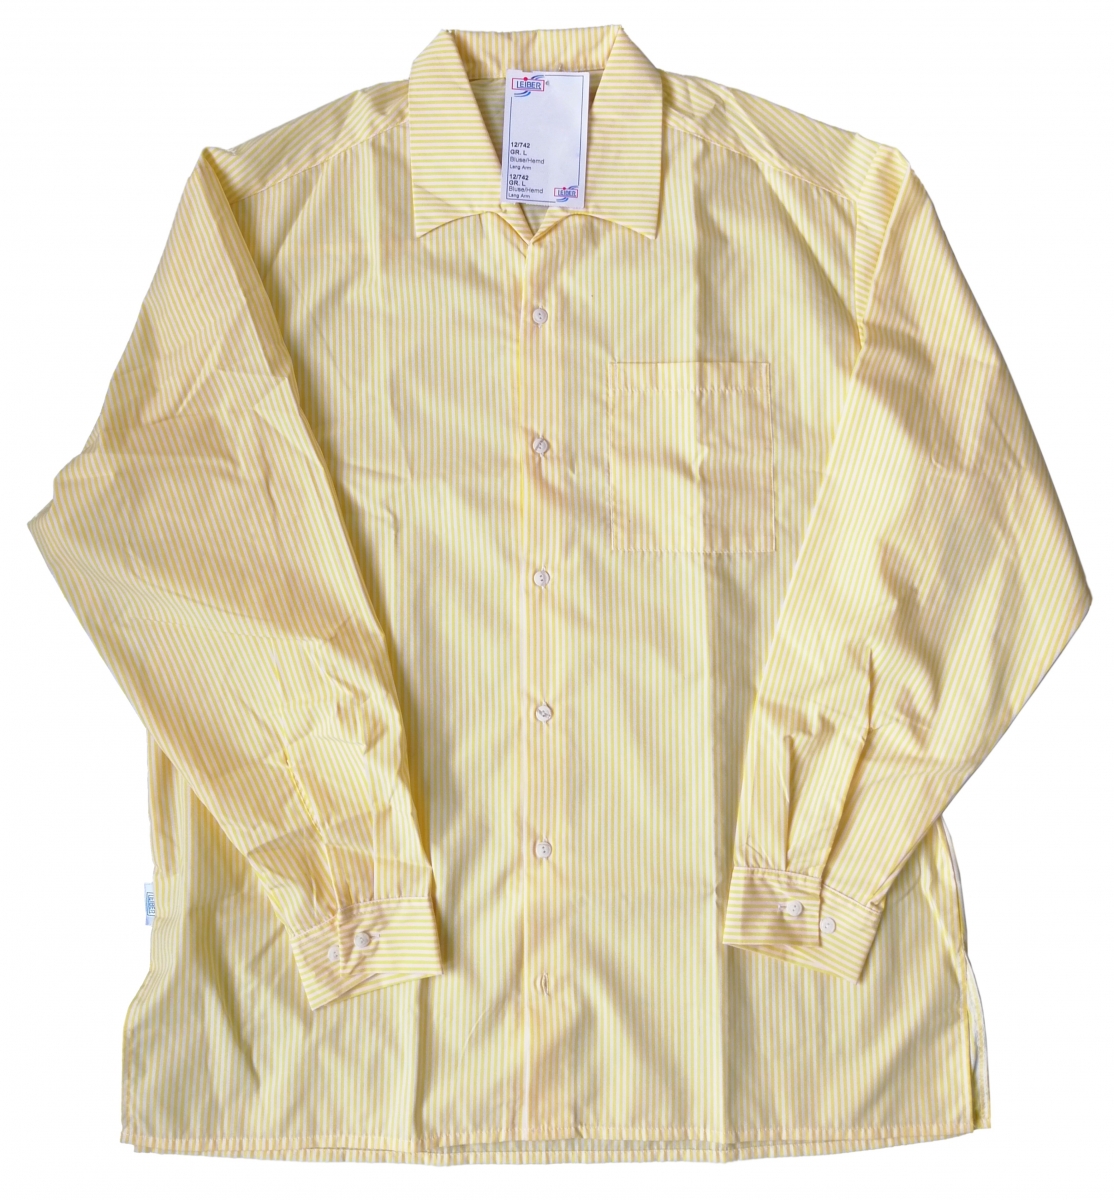 LEIBER Hemd Bluse Gastronomiekleidung Cateringkleidung Arbeitsshirt Berufsshirt 1 1 Arm gelb weiß